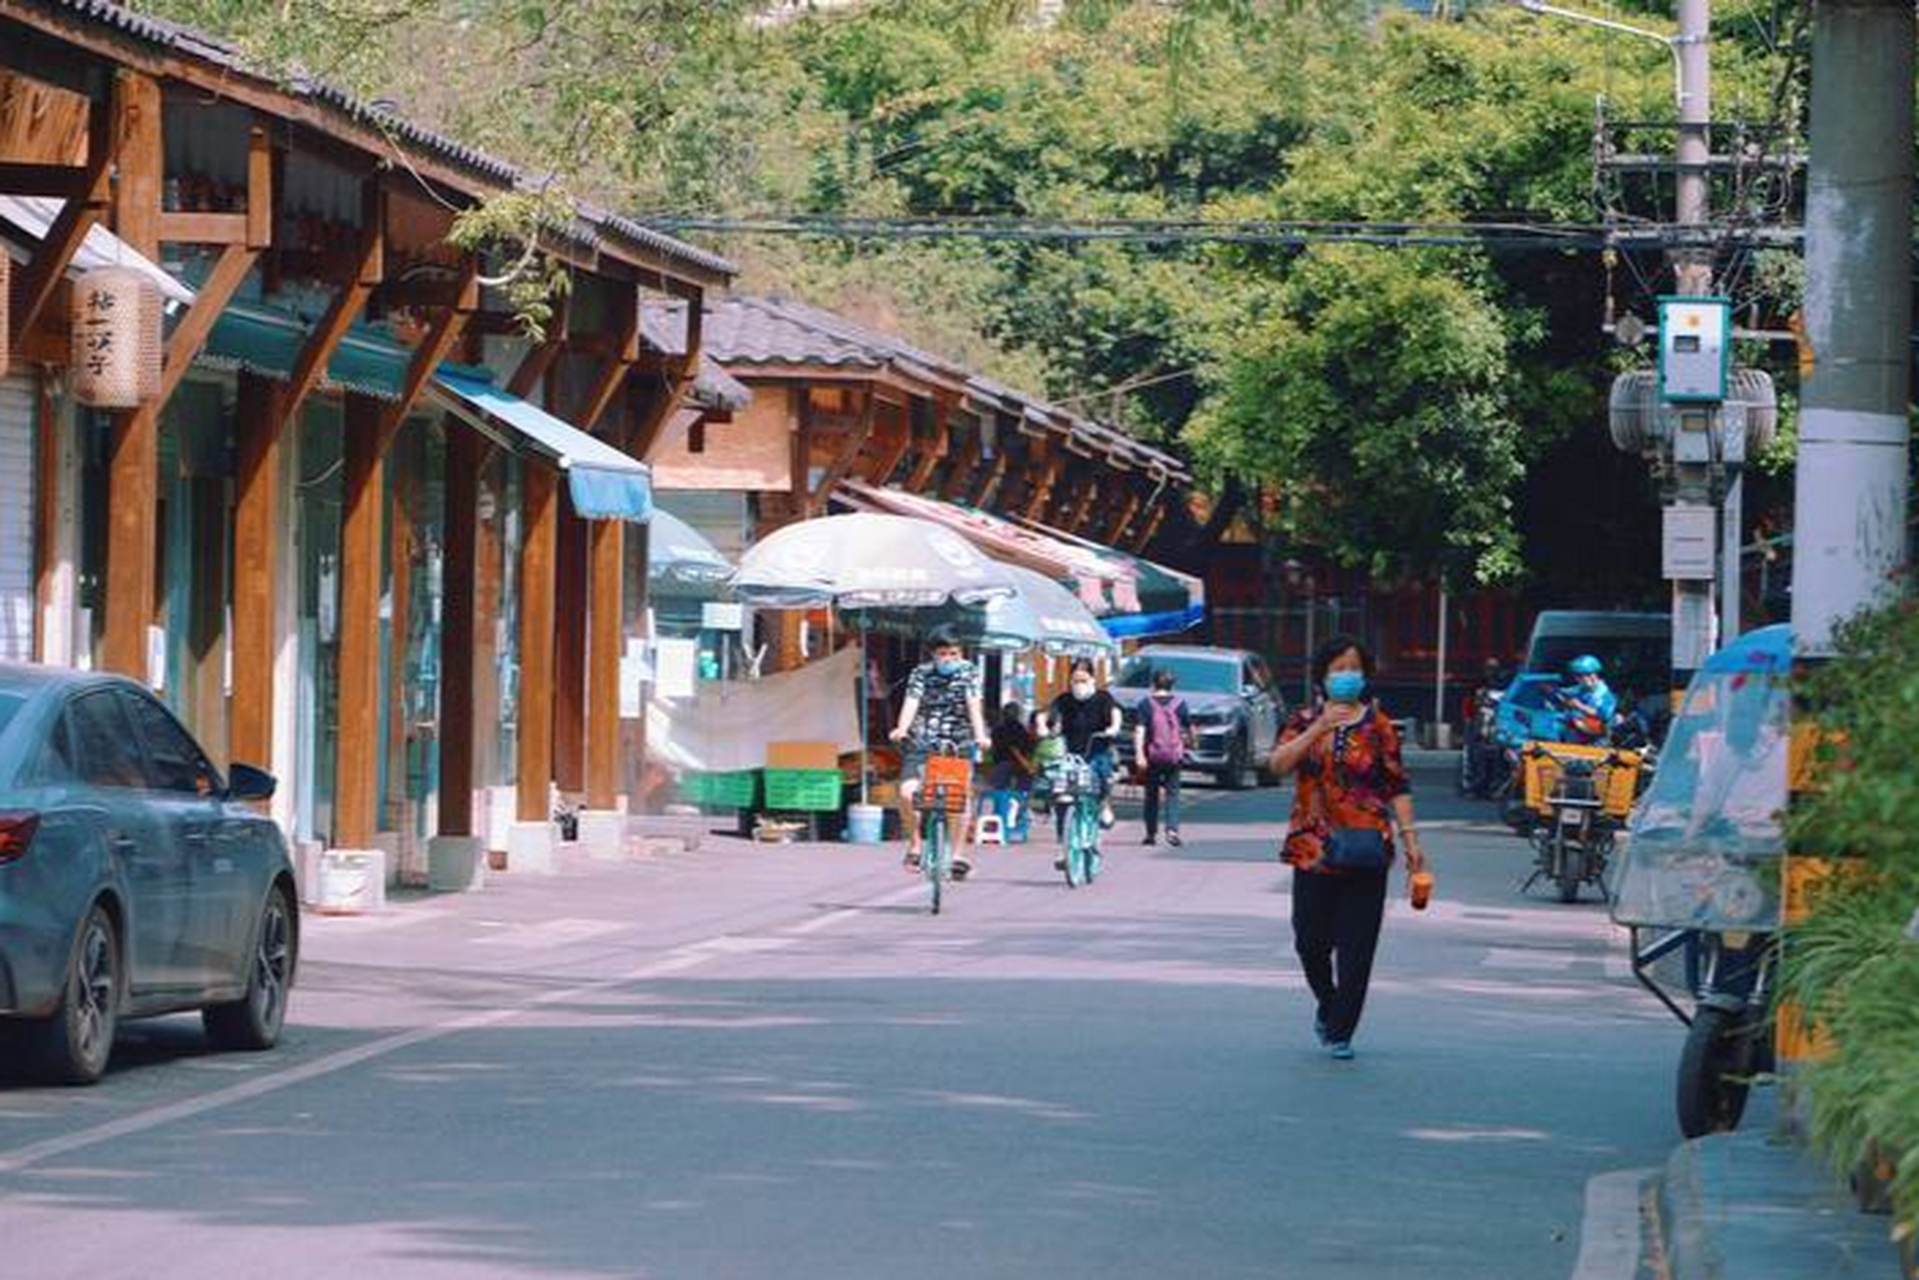 成都玉林路,是成都的初代网红老街,也是被一首歌曲二次带红的地方